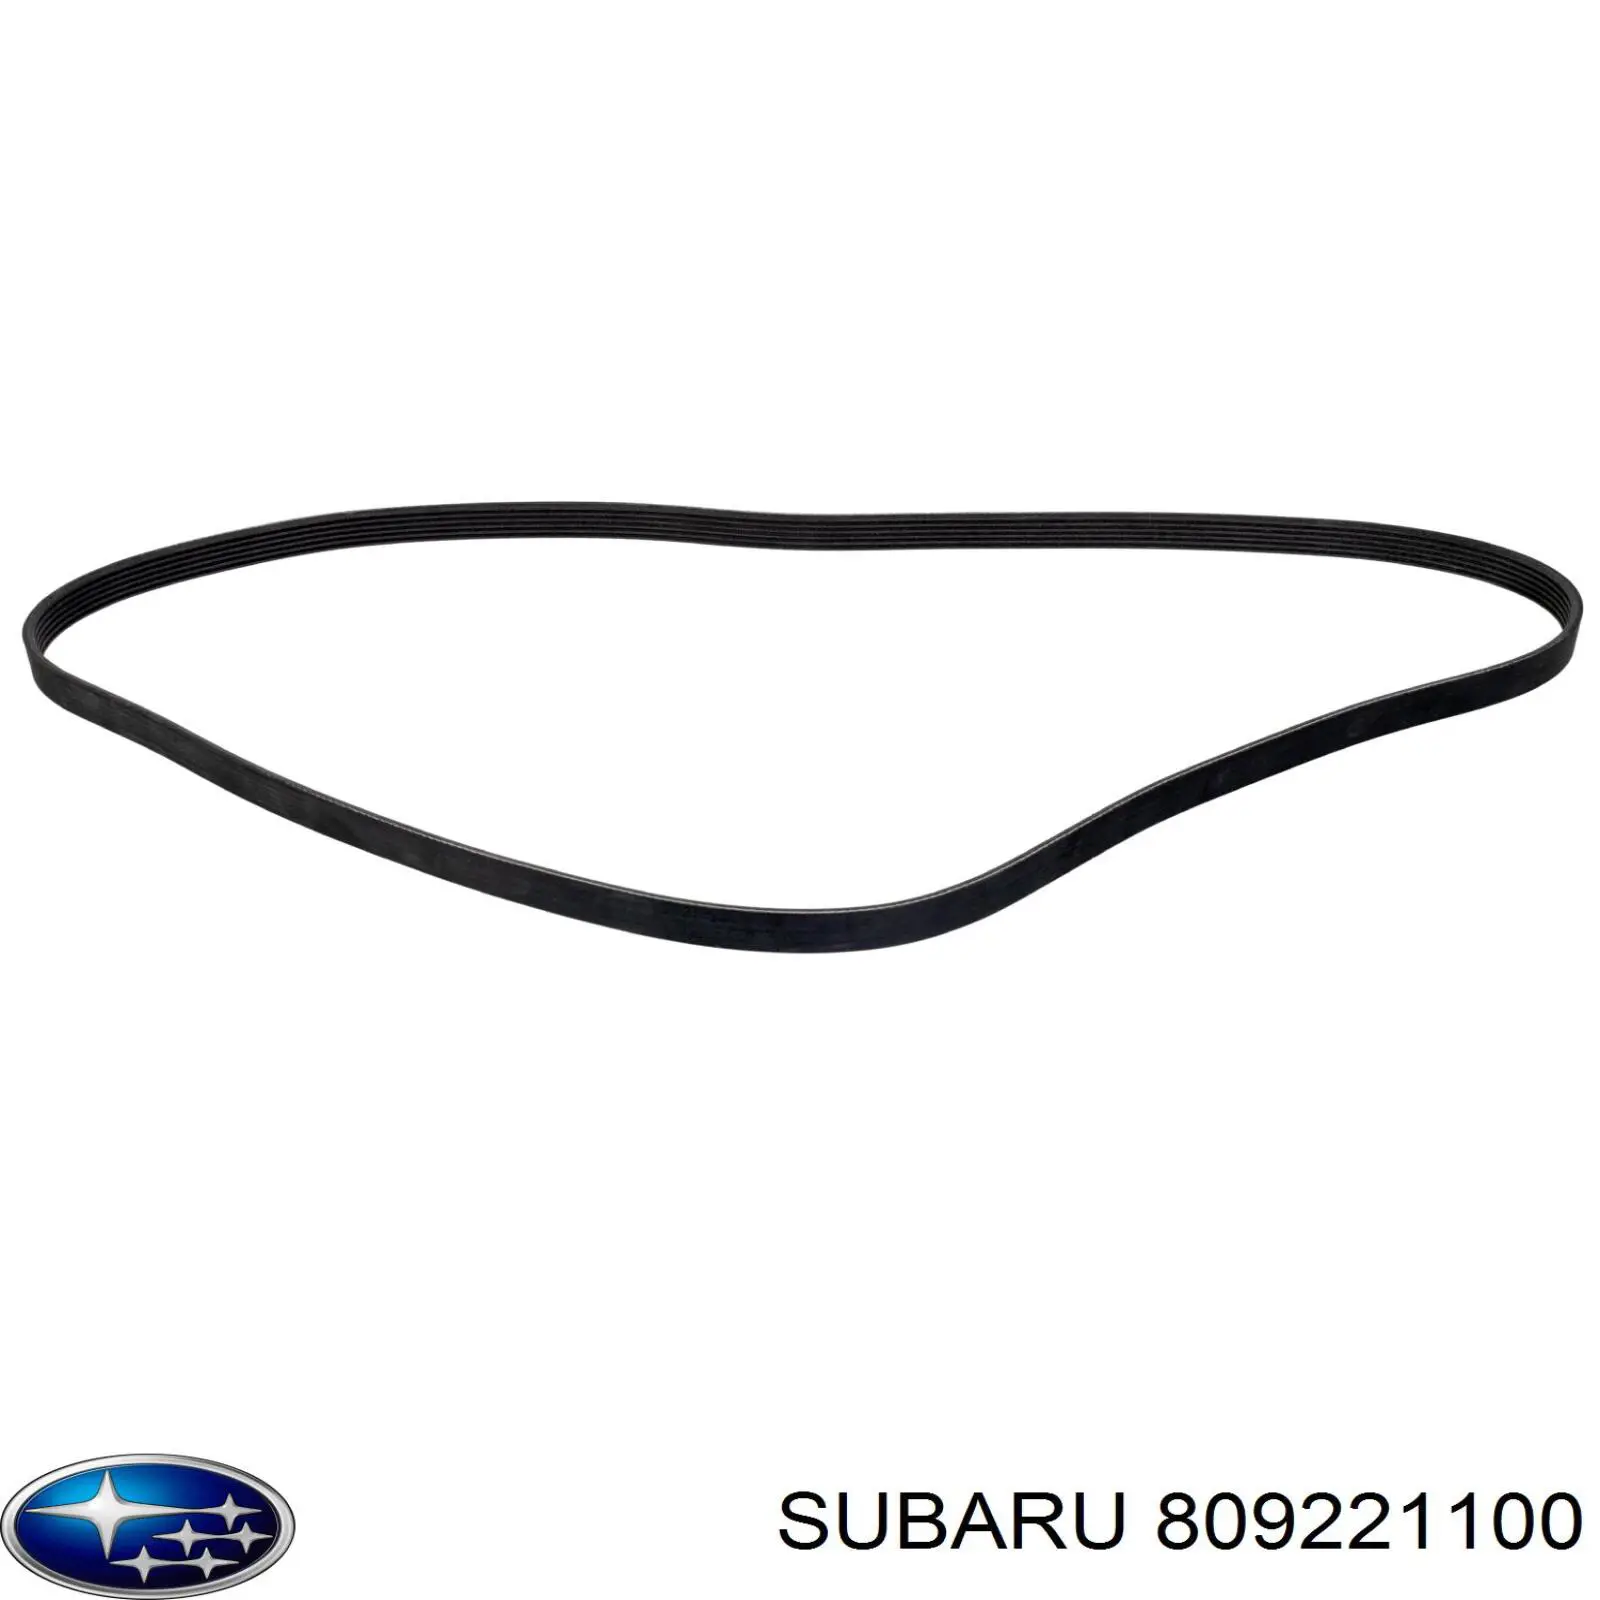 809221100 Subaru correa trapezoidal